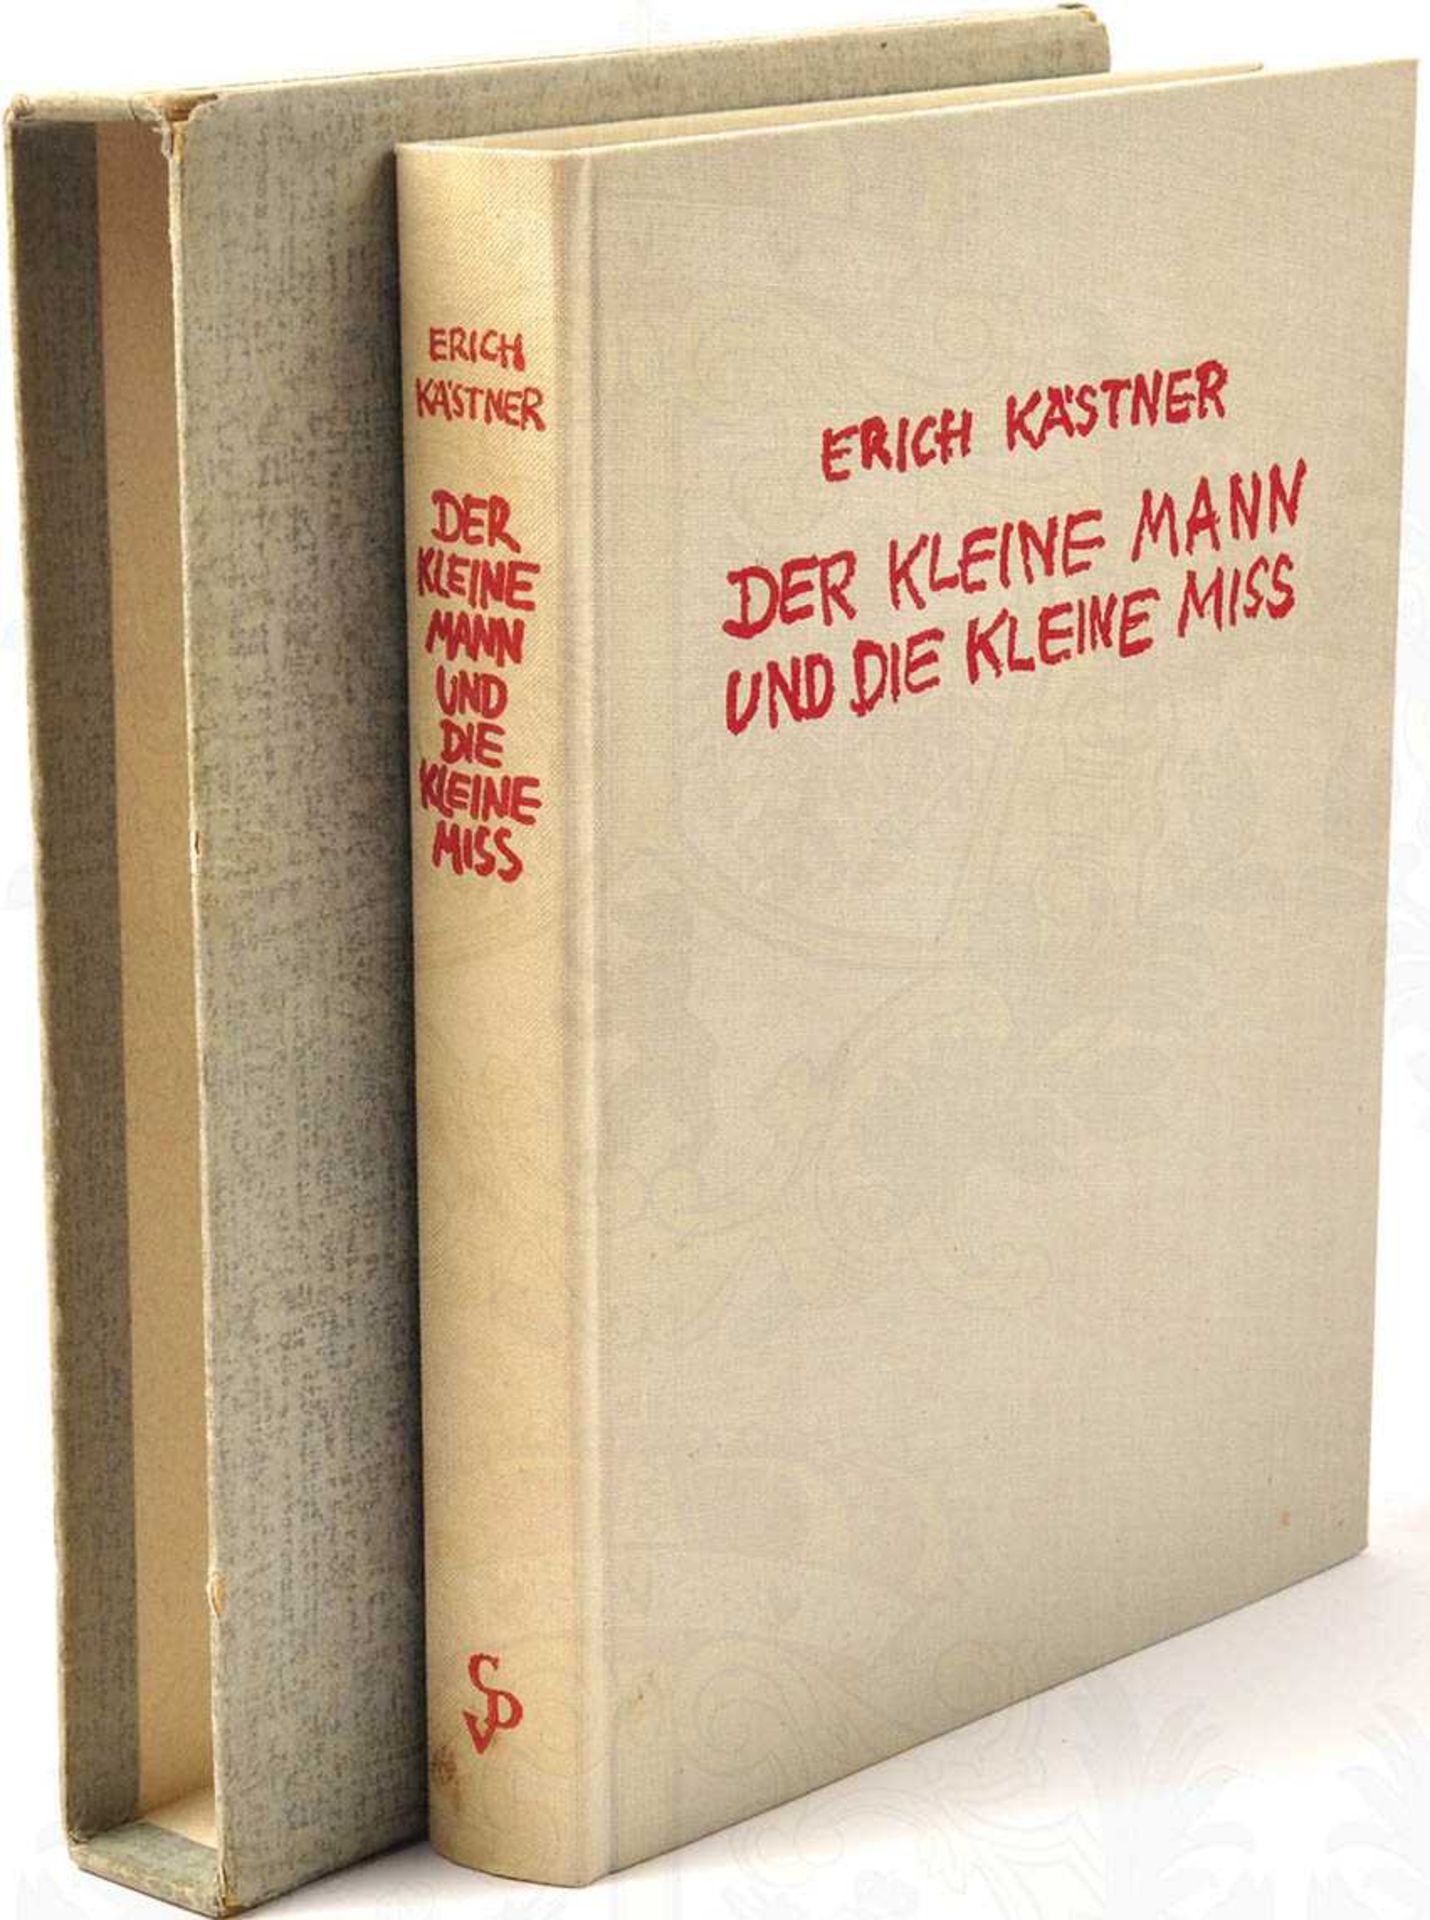 KÄSTNER, ERICH (1899-1974), Kugelschreiber-OU in seinem Buch "Der kleine Mann und die kleine